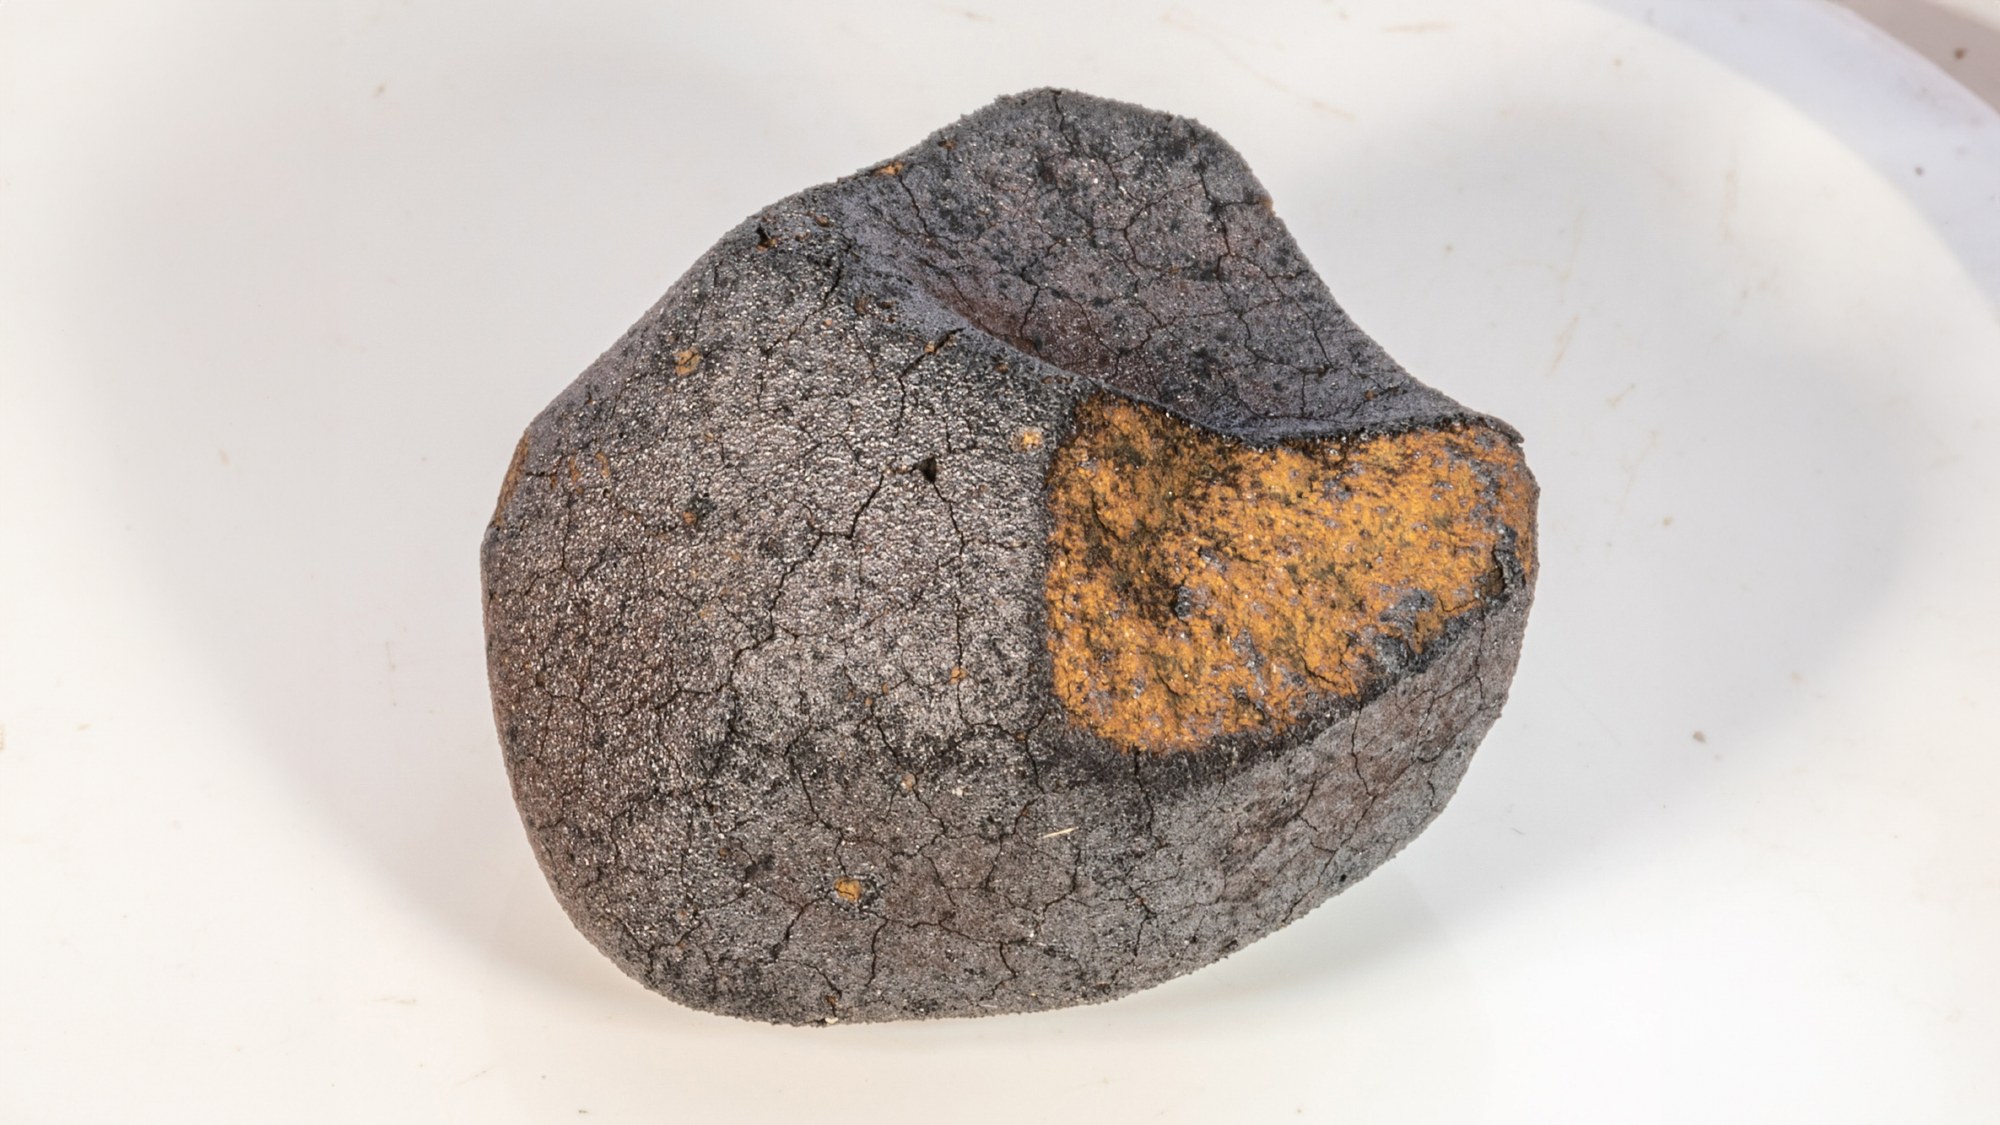 The Flensburg meteorite